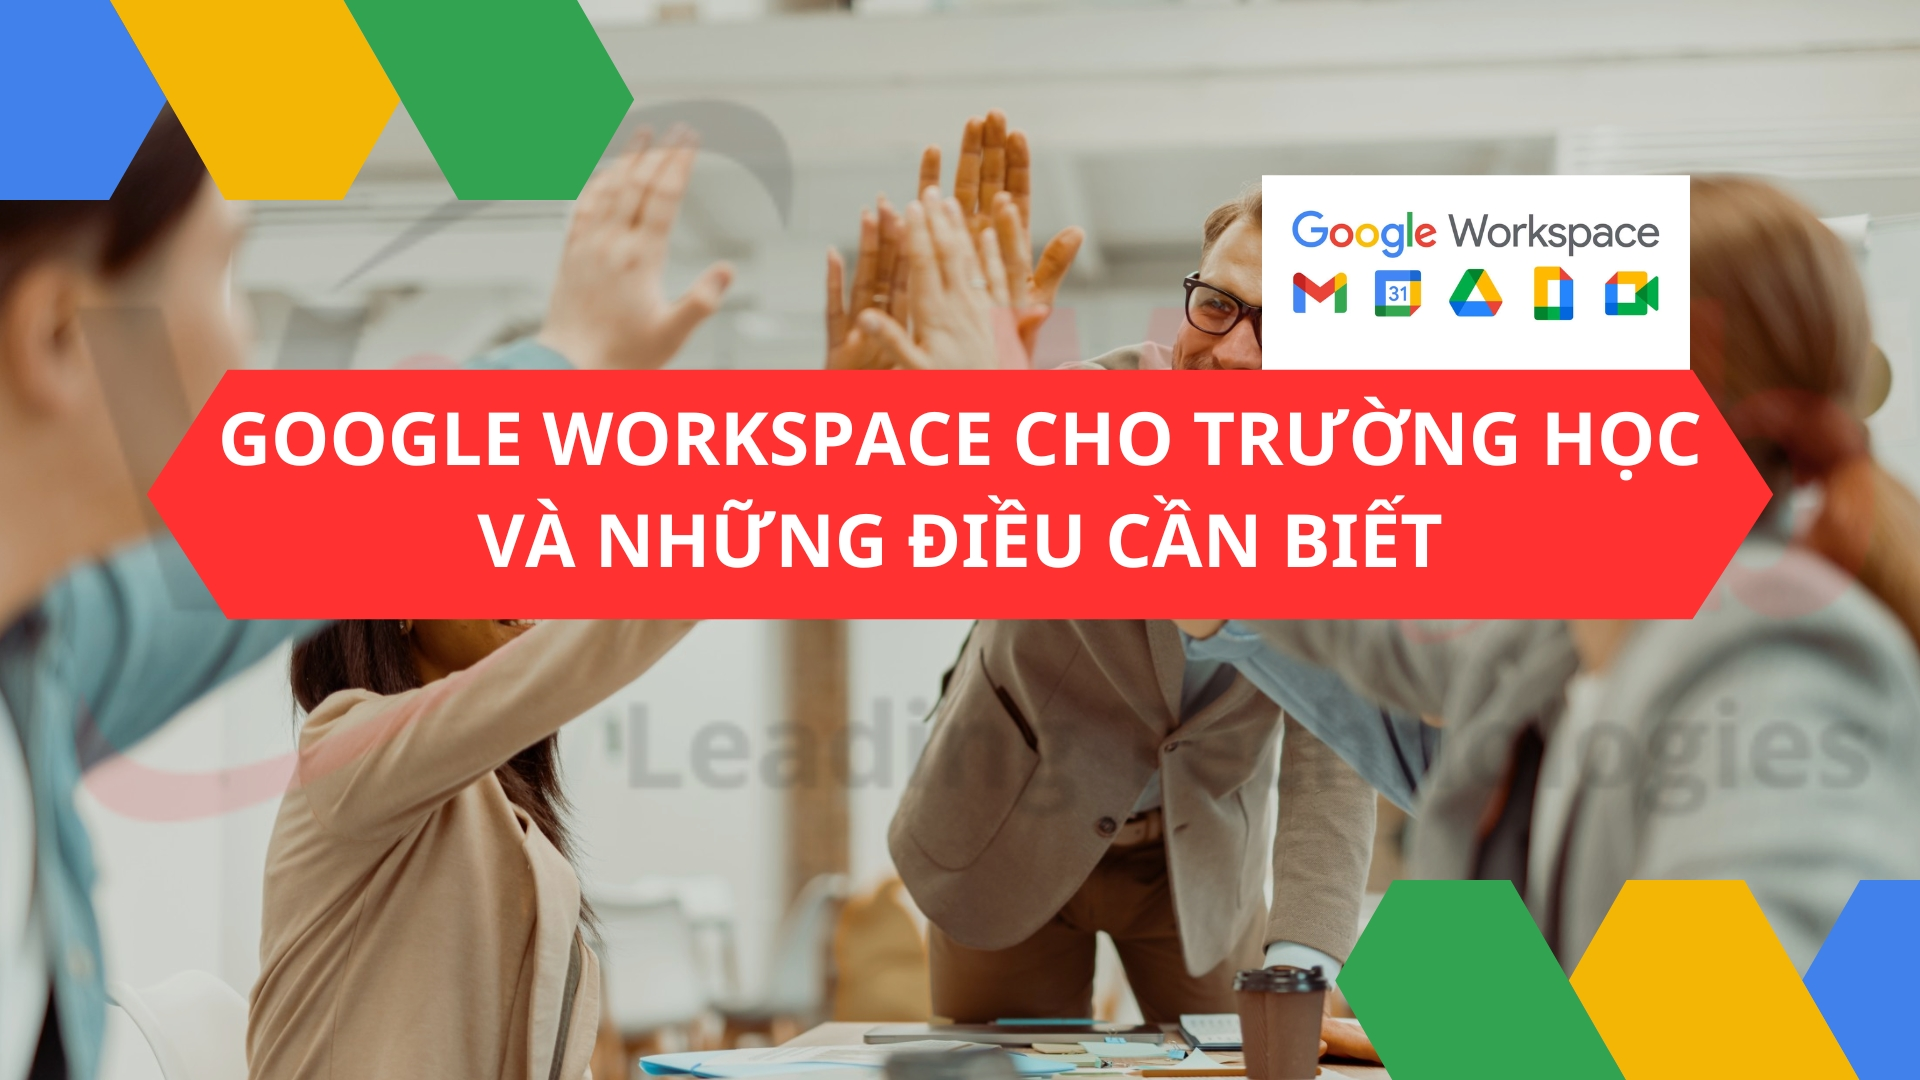 Google Workspace cho trường học: Những điều cần biết!